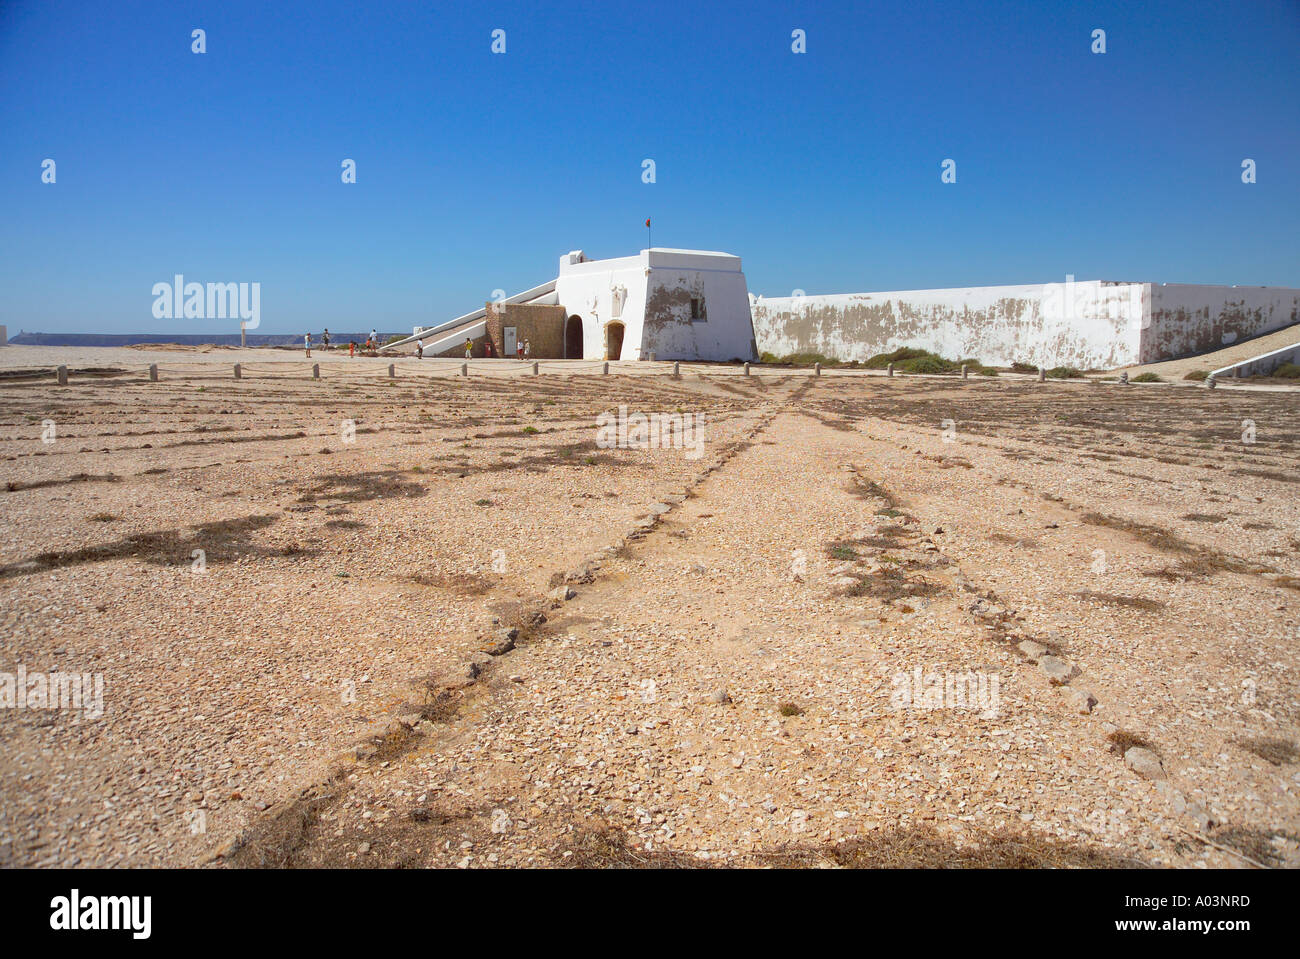 Fort of Sagres, Rosa dos Ventos, Sagres, Algarve, Portugal Stock Photo